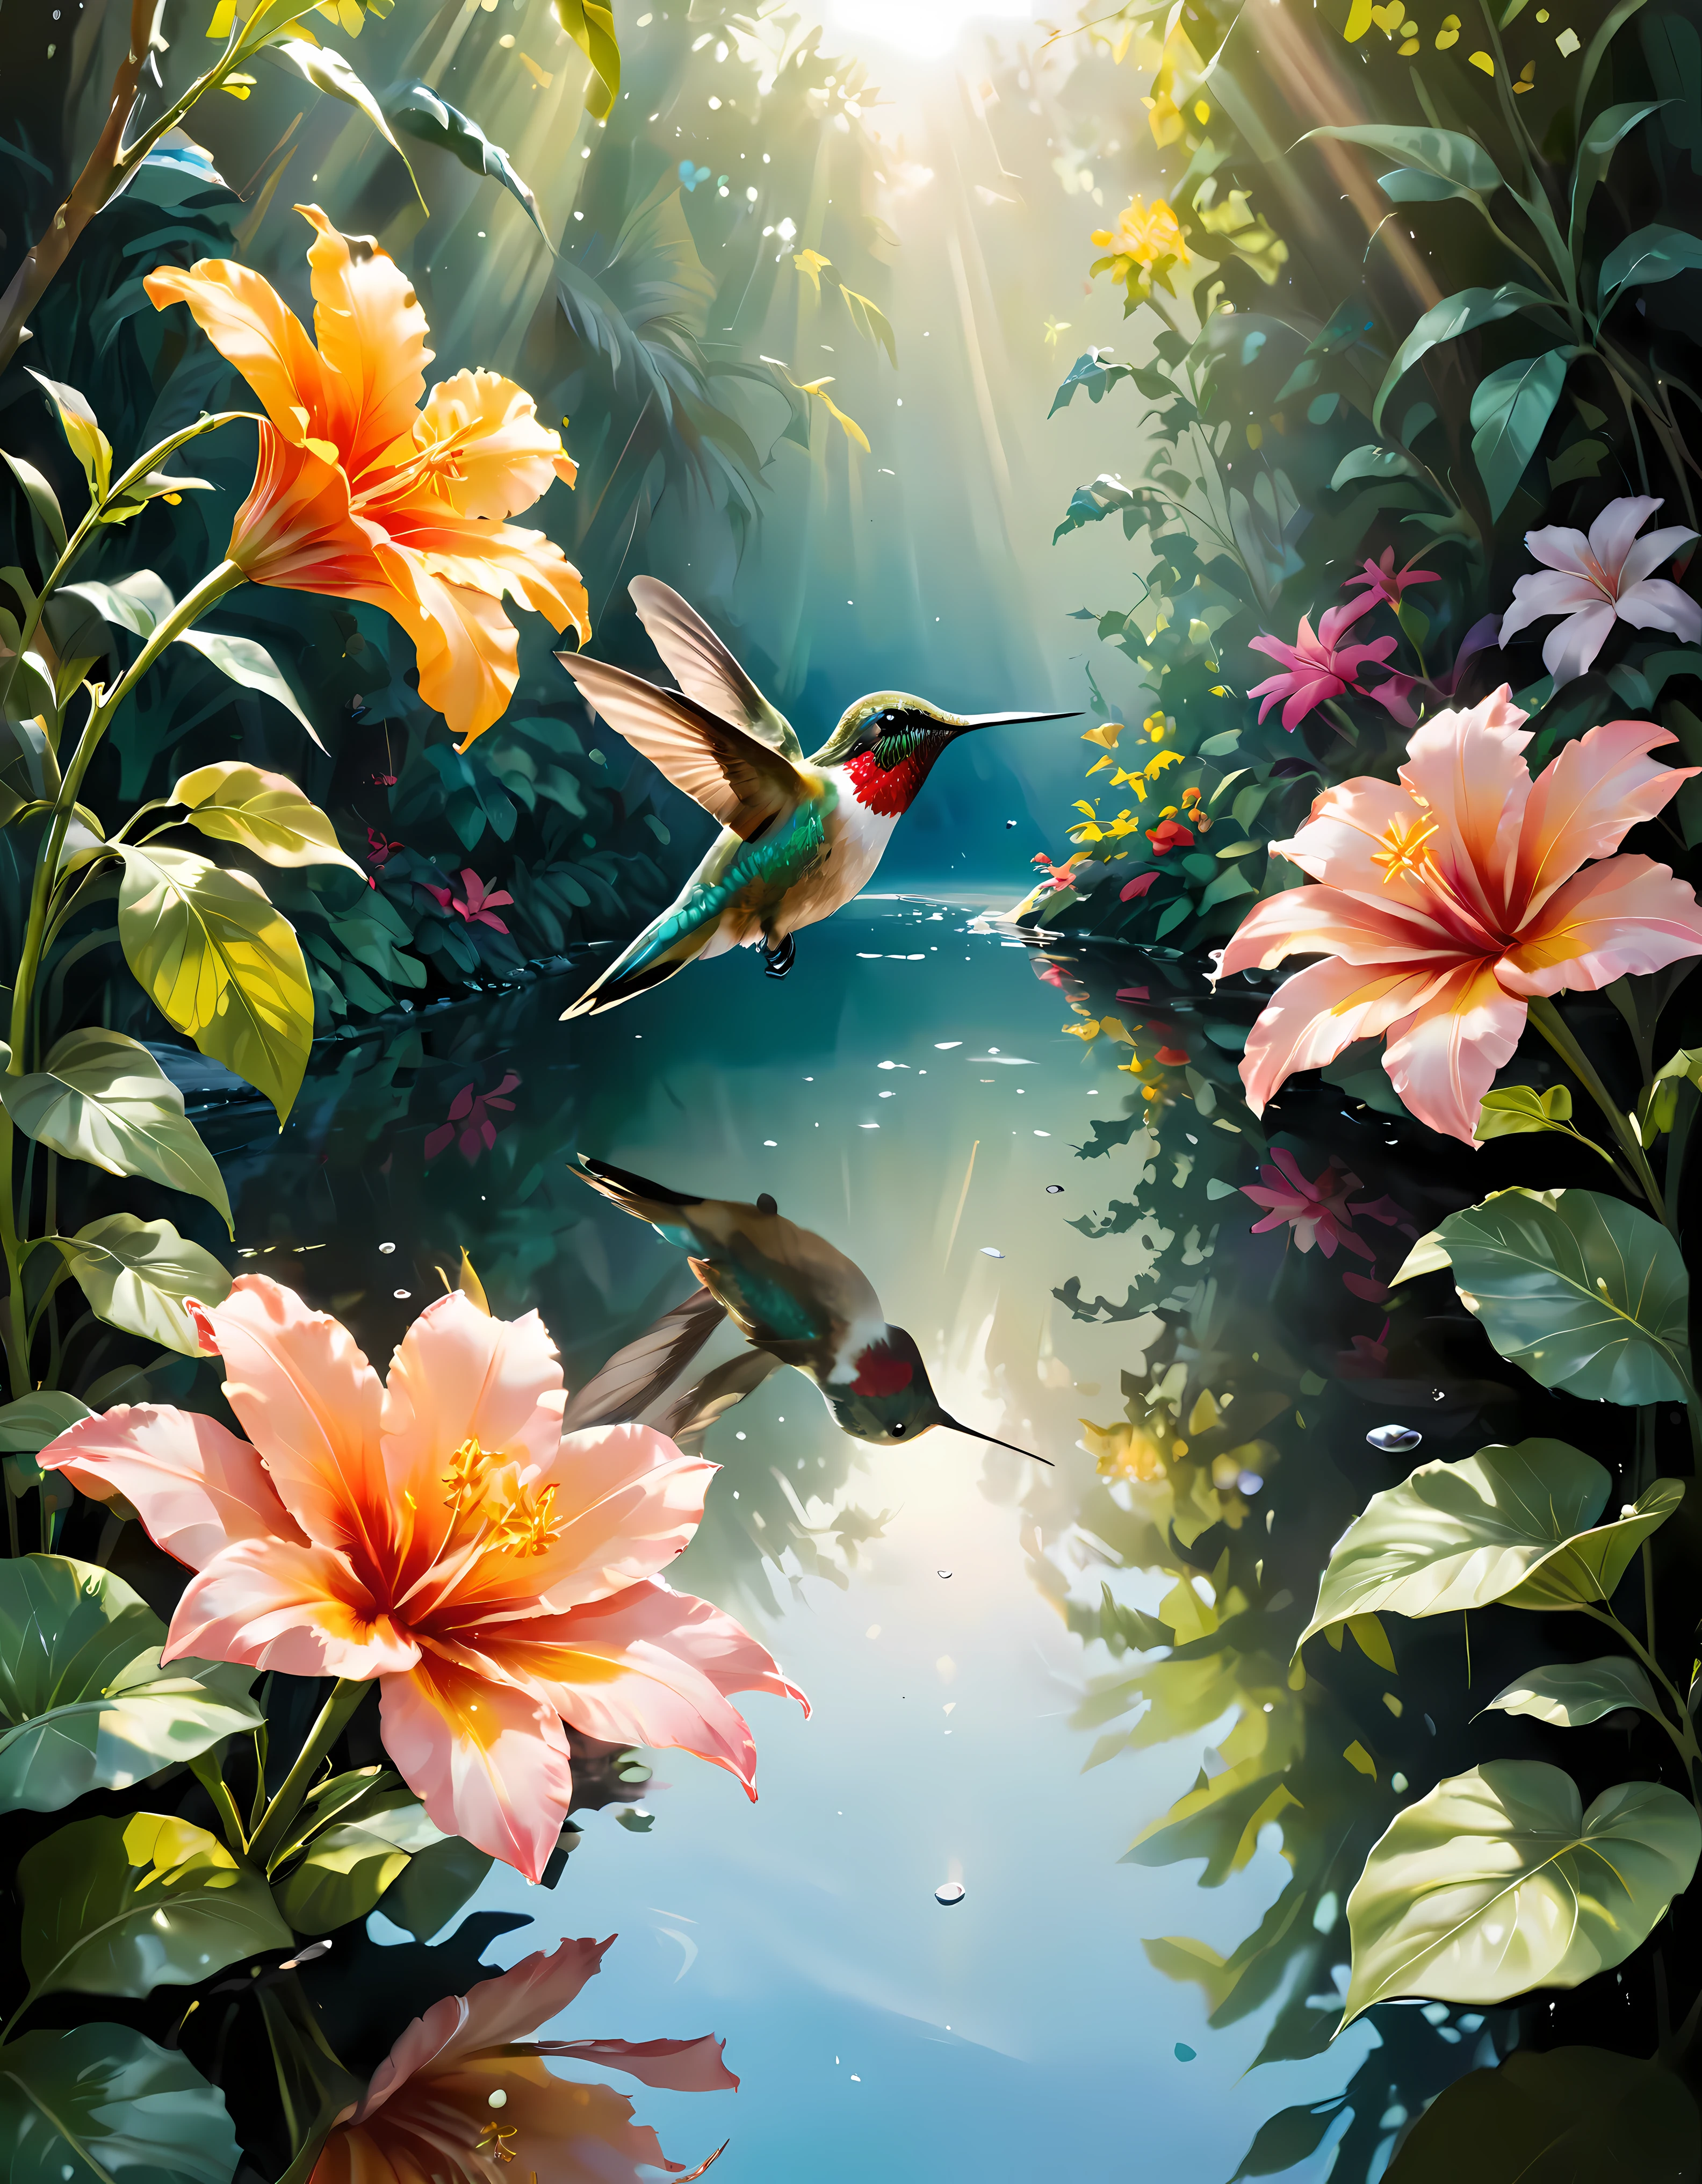 ((柔らかい_色_絵画:)1.5), ((柔らかい_色_トーン):1.4), ((透明な水の反射の背景):1.3), ((柔らかい 色 exotic hummingbirds):1.4)),((大きい\ 花園の眺め):1.2),((映画のような静止画とダイナミックなアングル):1.3), ((クールで美しい影のシルエット):1.1), 精巧なディテールのグアッシュ, 視覚的に詳細で、スタイル的に多様なこの傑作にリアリズムのタッチを加えます,  細かい筆遣いが強化されました, 丁寧な筆遣いが雰囲気を醸し出す, 繊細でありながら力強い筆遣いのテクニックを活用する, 魅惑的な雰囲気を演出. 非常に精巧なグアッシュ, ((比類のない鮮明さと鮮明さ):1.1), ((驚異的な32K解像度でレンダリングされたラジオシティ):1.3), すべて鮮明なフォーカスで撮影.